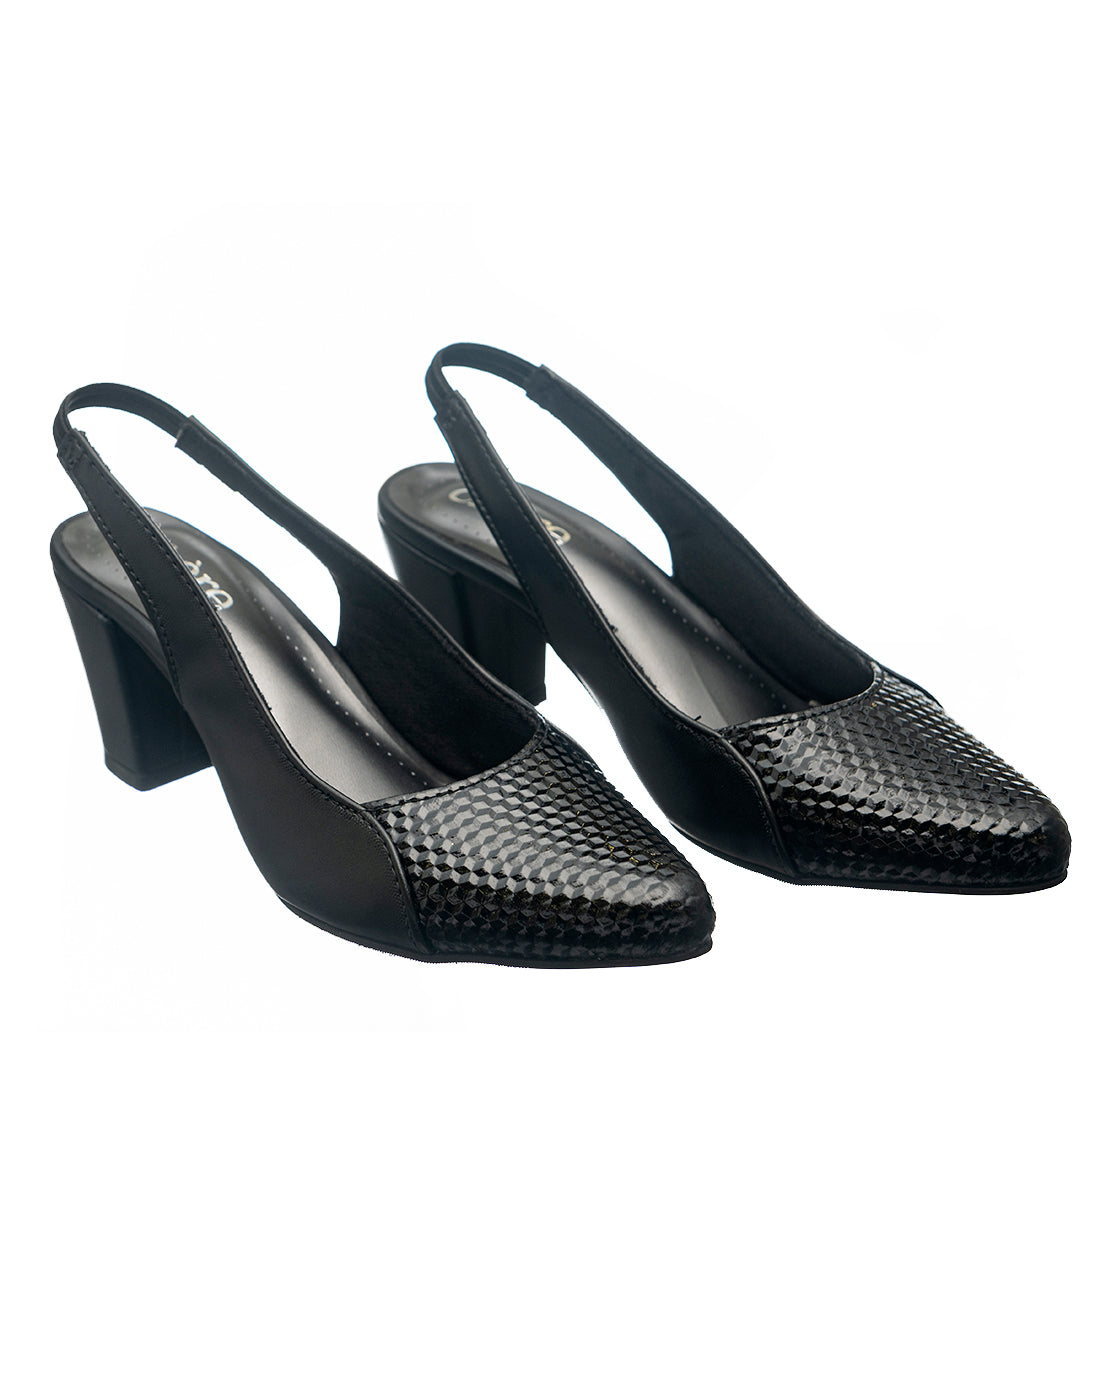 LOEWE Rose Pointed-Toe Slingback Heels in BLACK | Endource